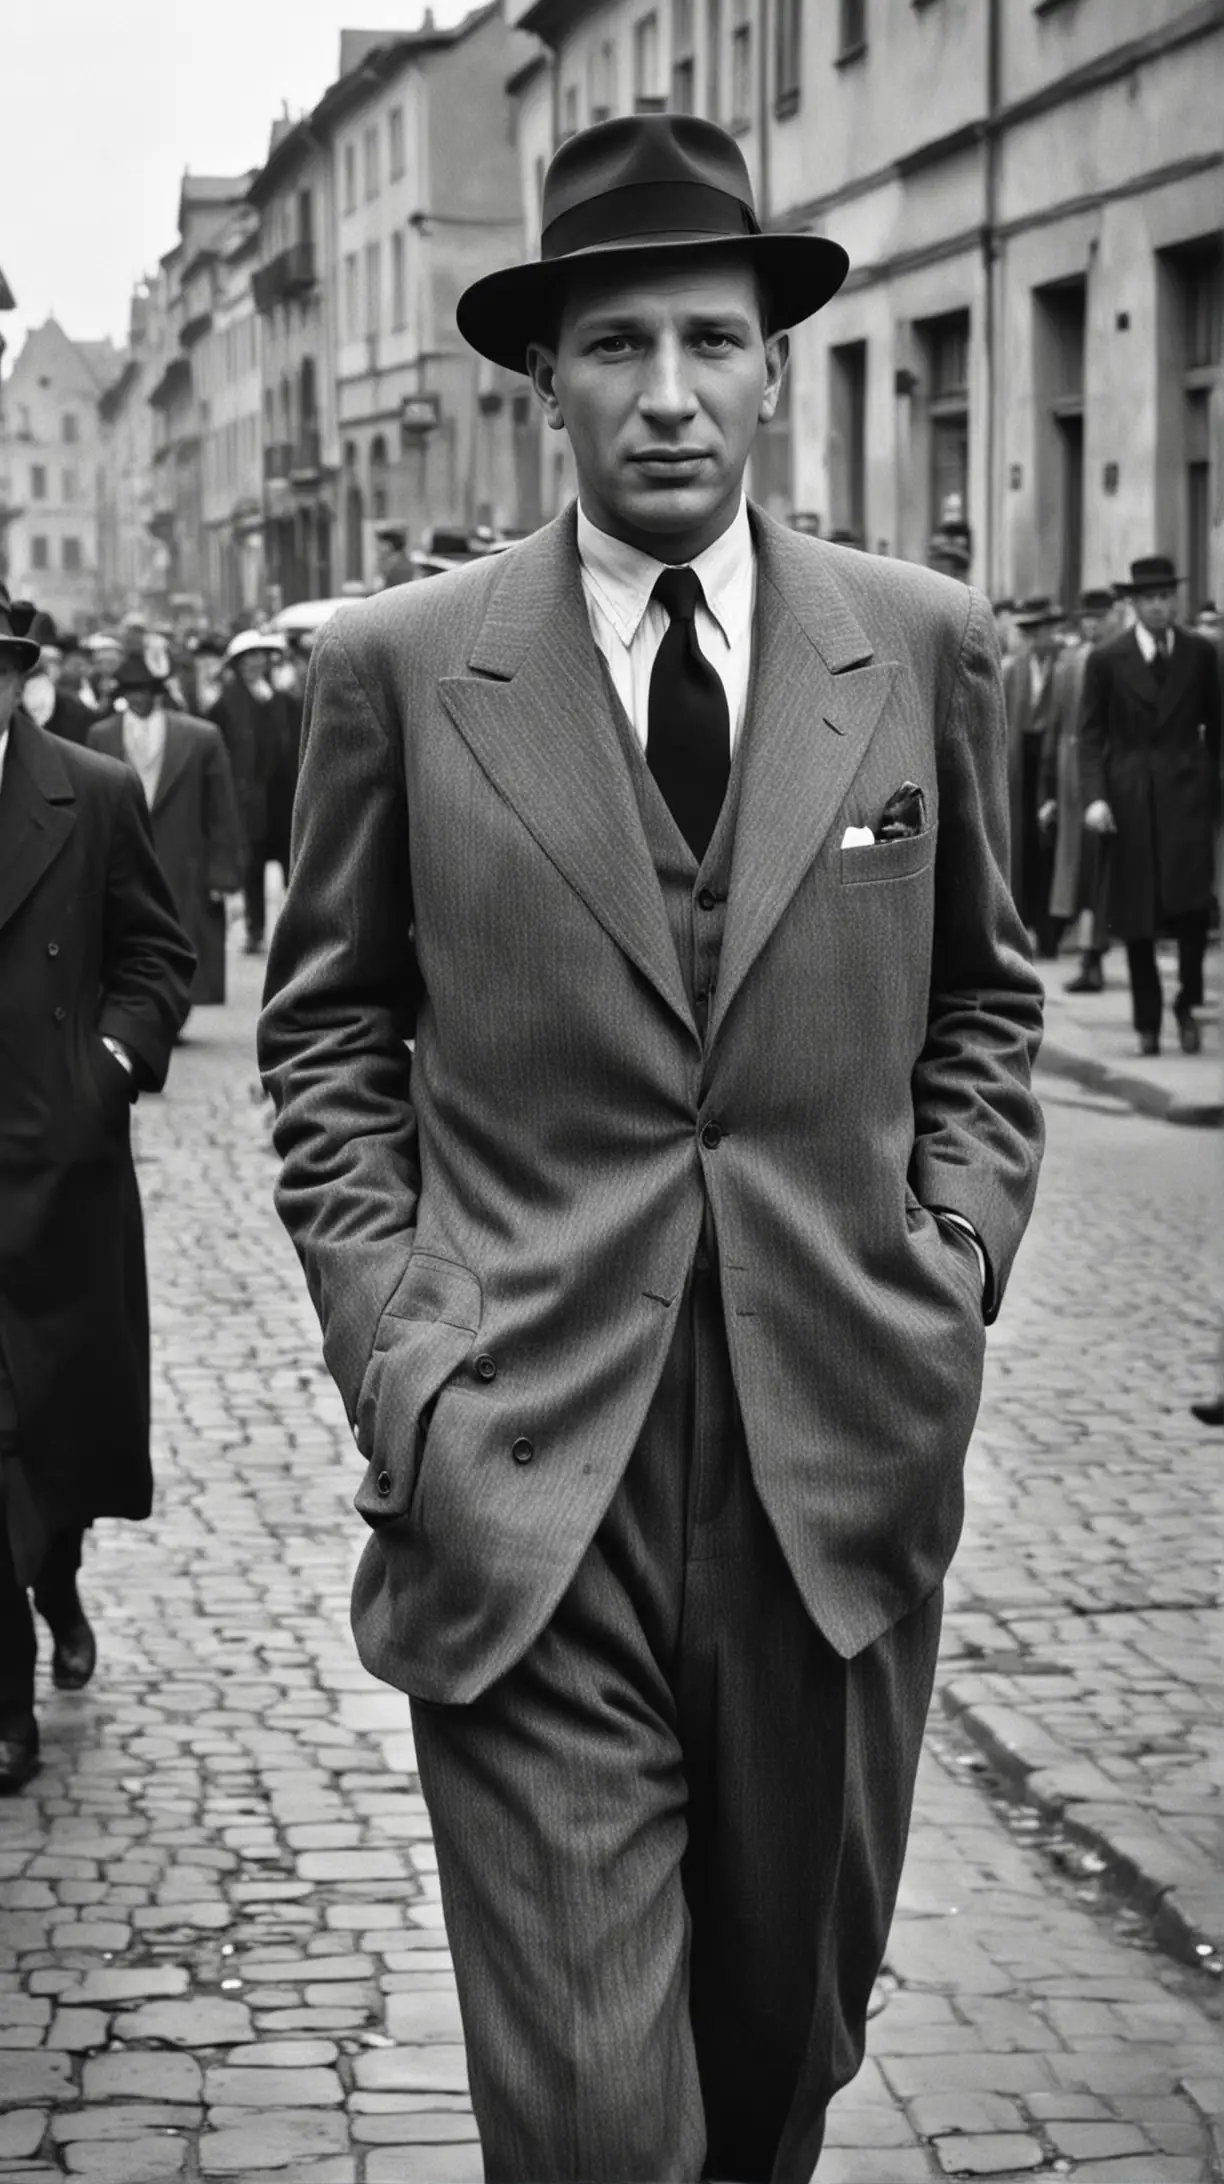 Oskar Schindler confidently strides Krakows bustling streets in 1939